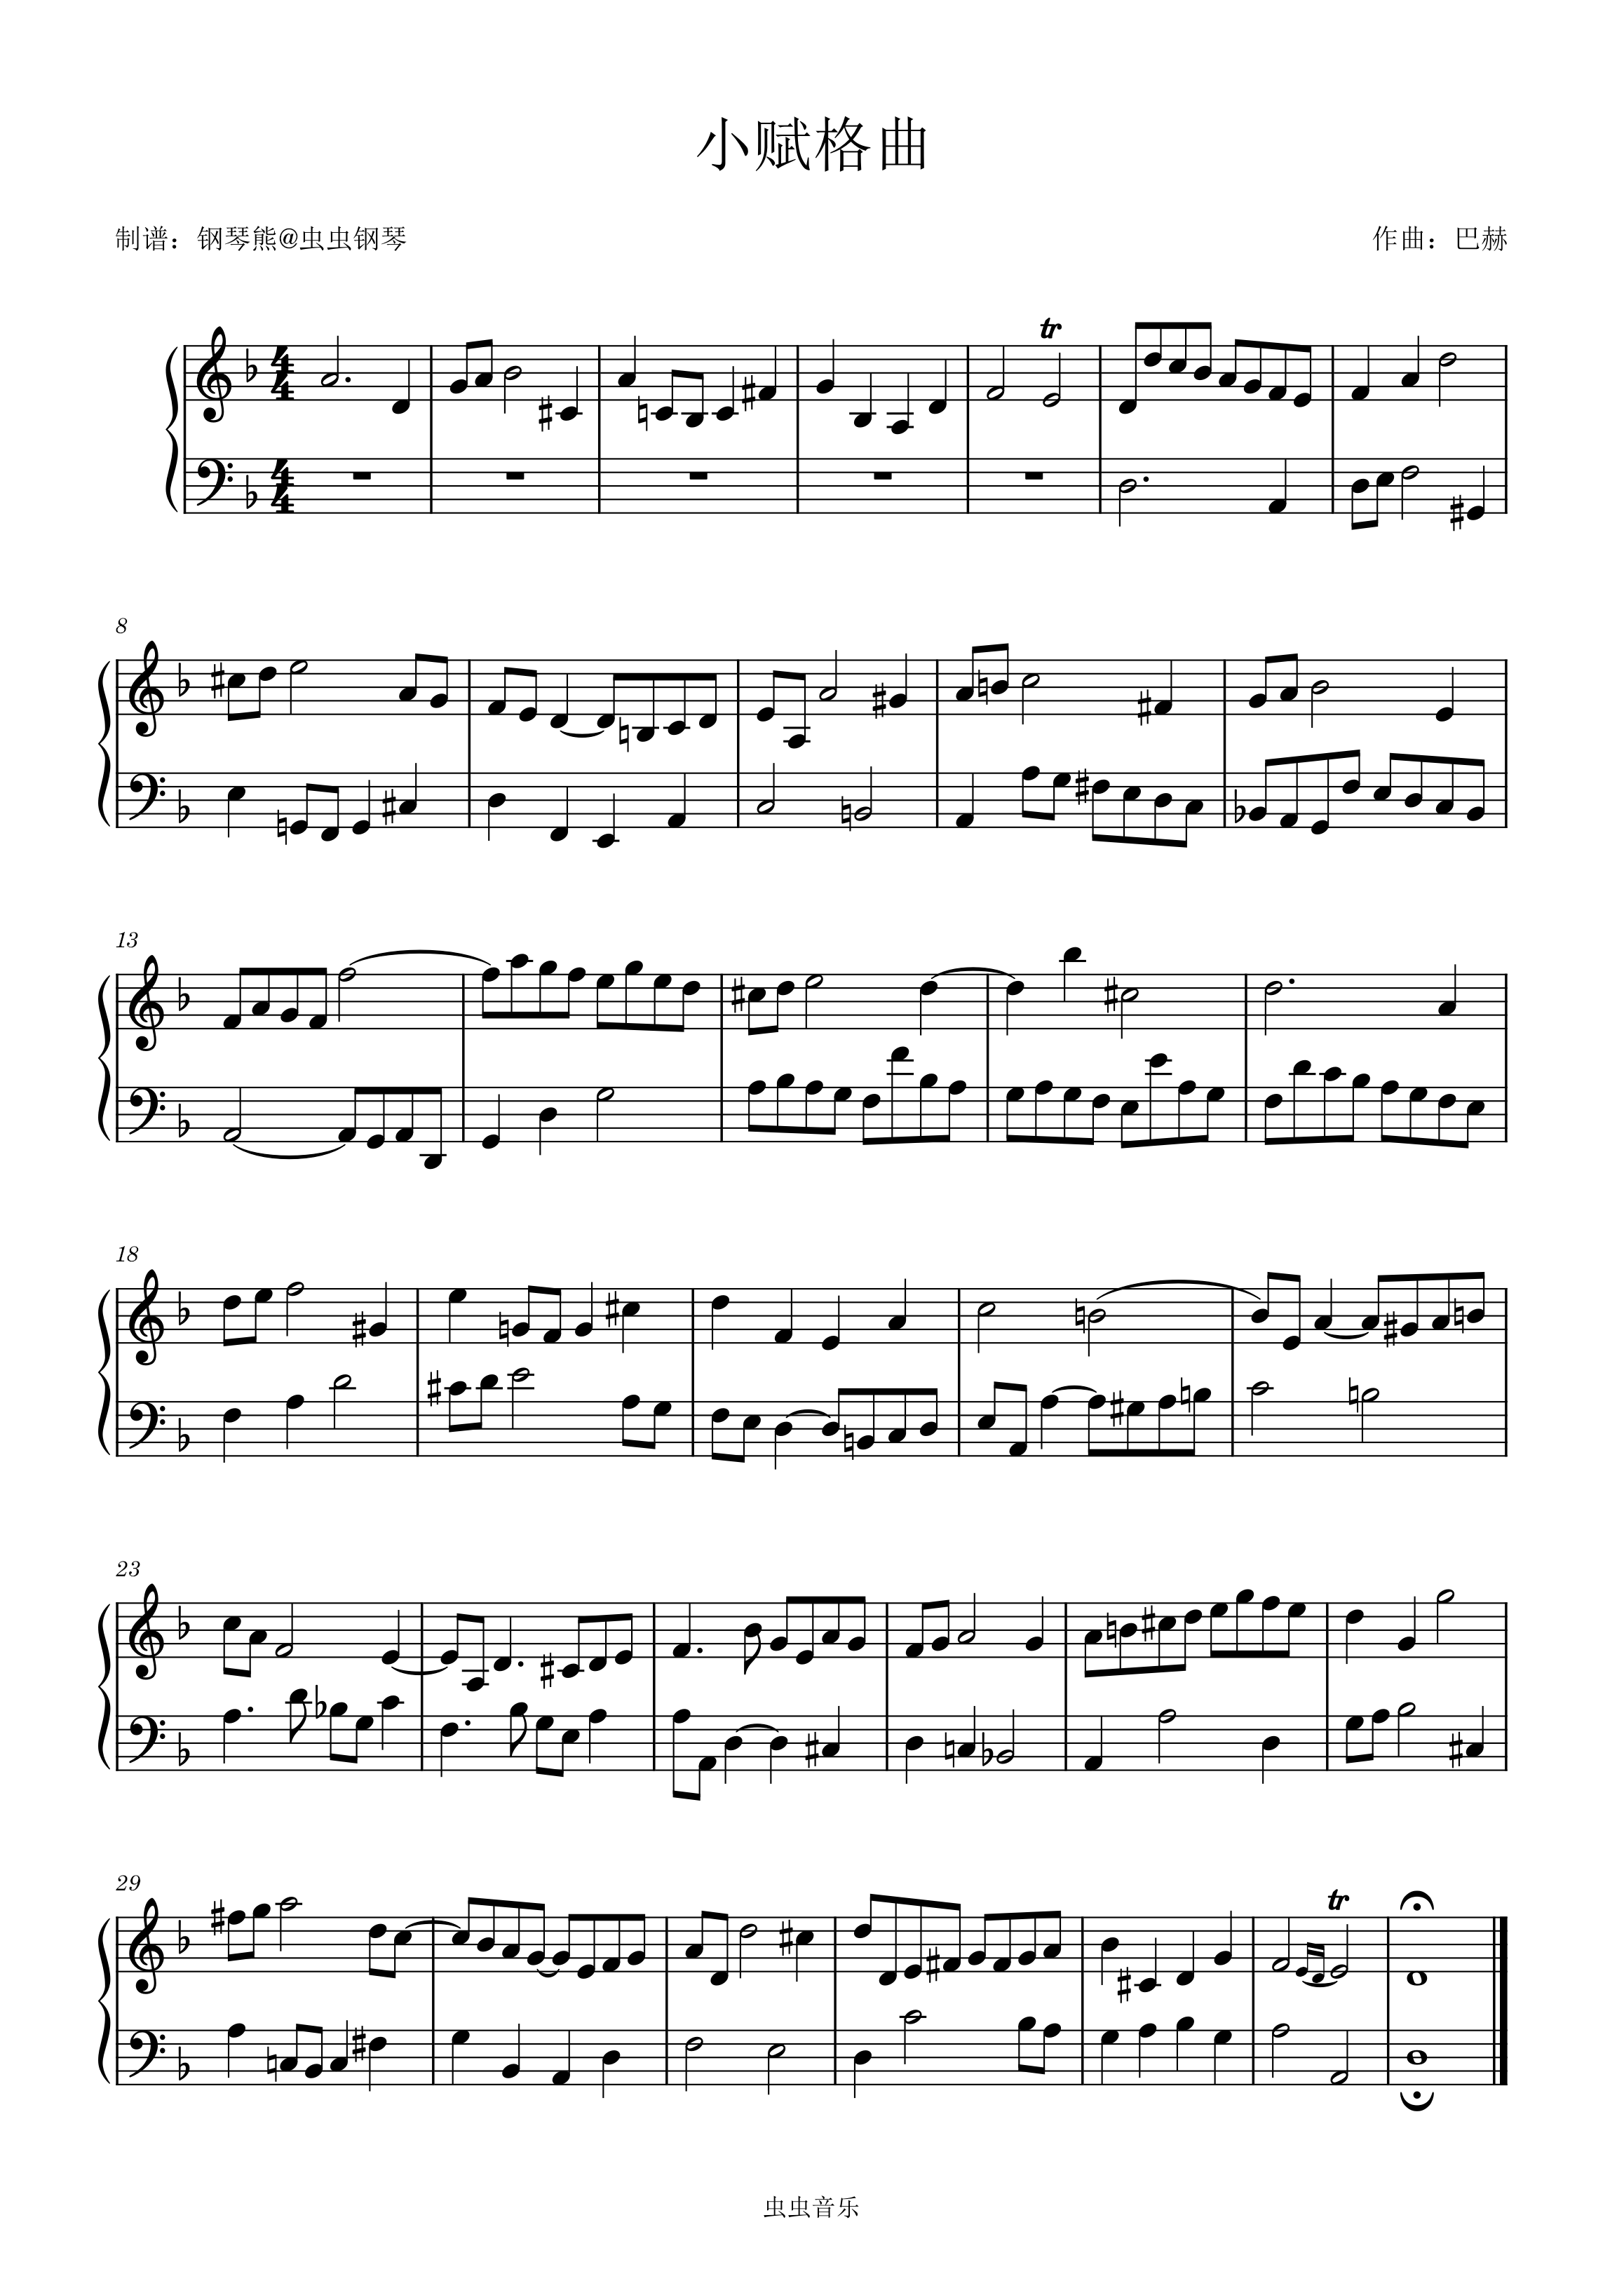 三声部赋格曲NO.21(C大调)《巴赫 小前奏曲与赋格曲》钢琴简谱 数字双手-虫虫钢琴